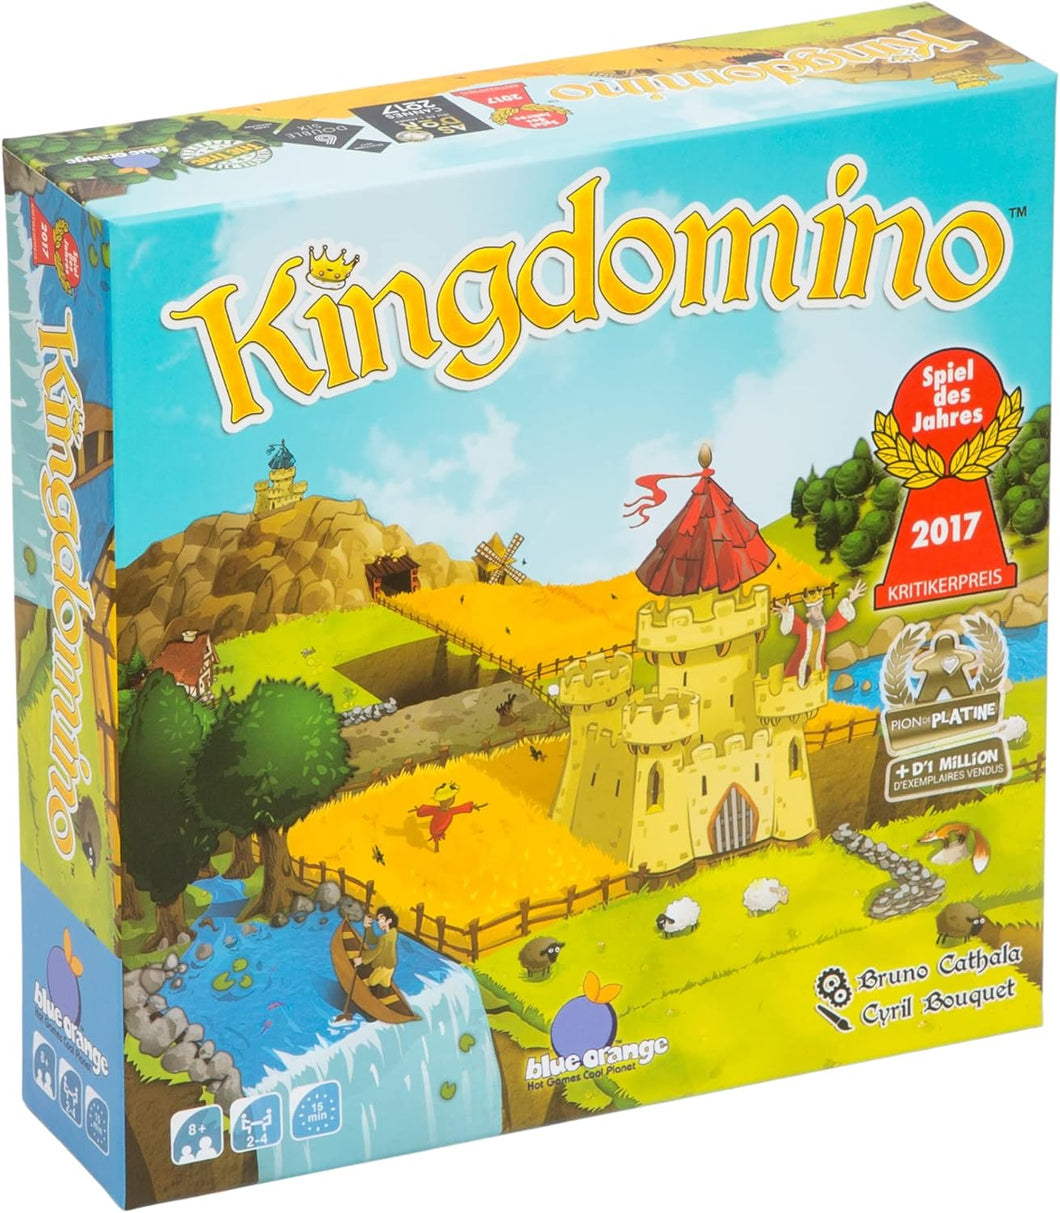 Kingdomino Tile Board Game